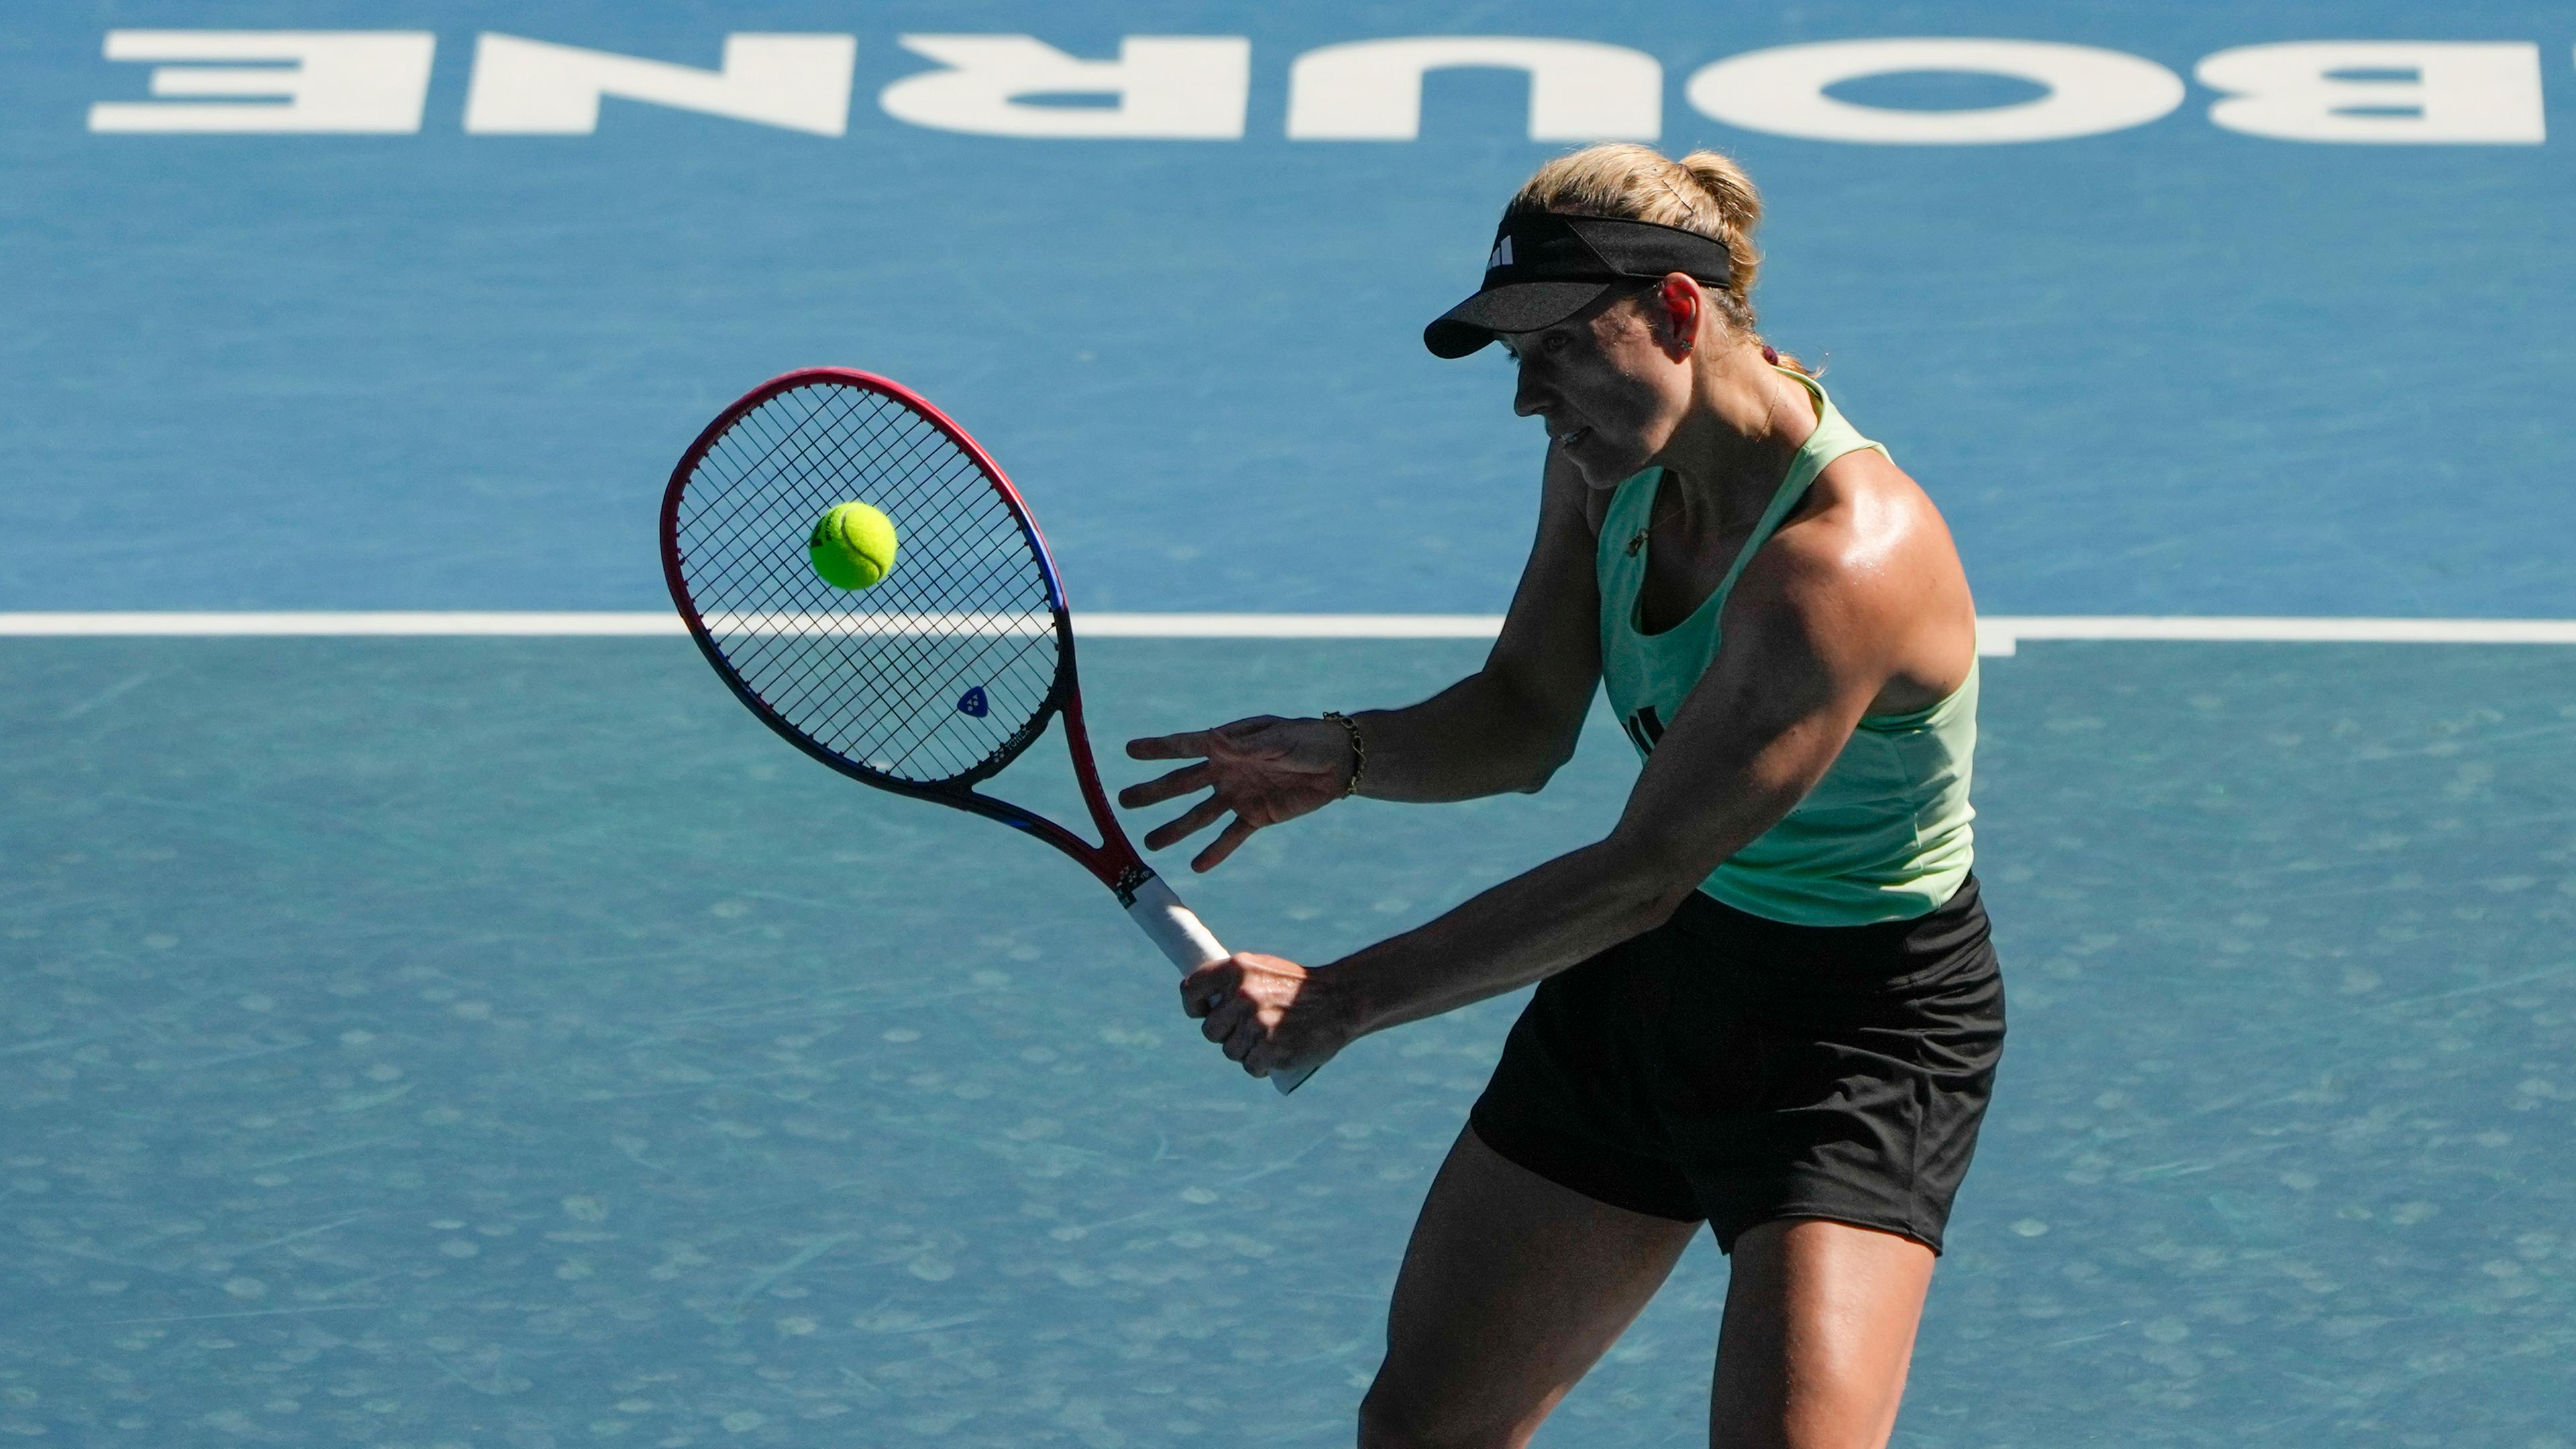 Australien, Melbourne: Tennis: Grand Slam - Australian Open, Training. Angelique Kerber aus Deutschland spielt einen Rückhand-Return während einer Trainingseinheit vor den Australian Open im Melbourne Park.